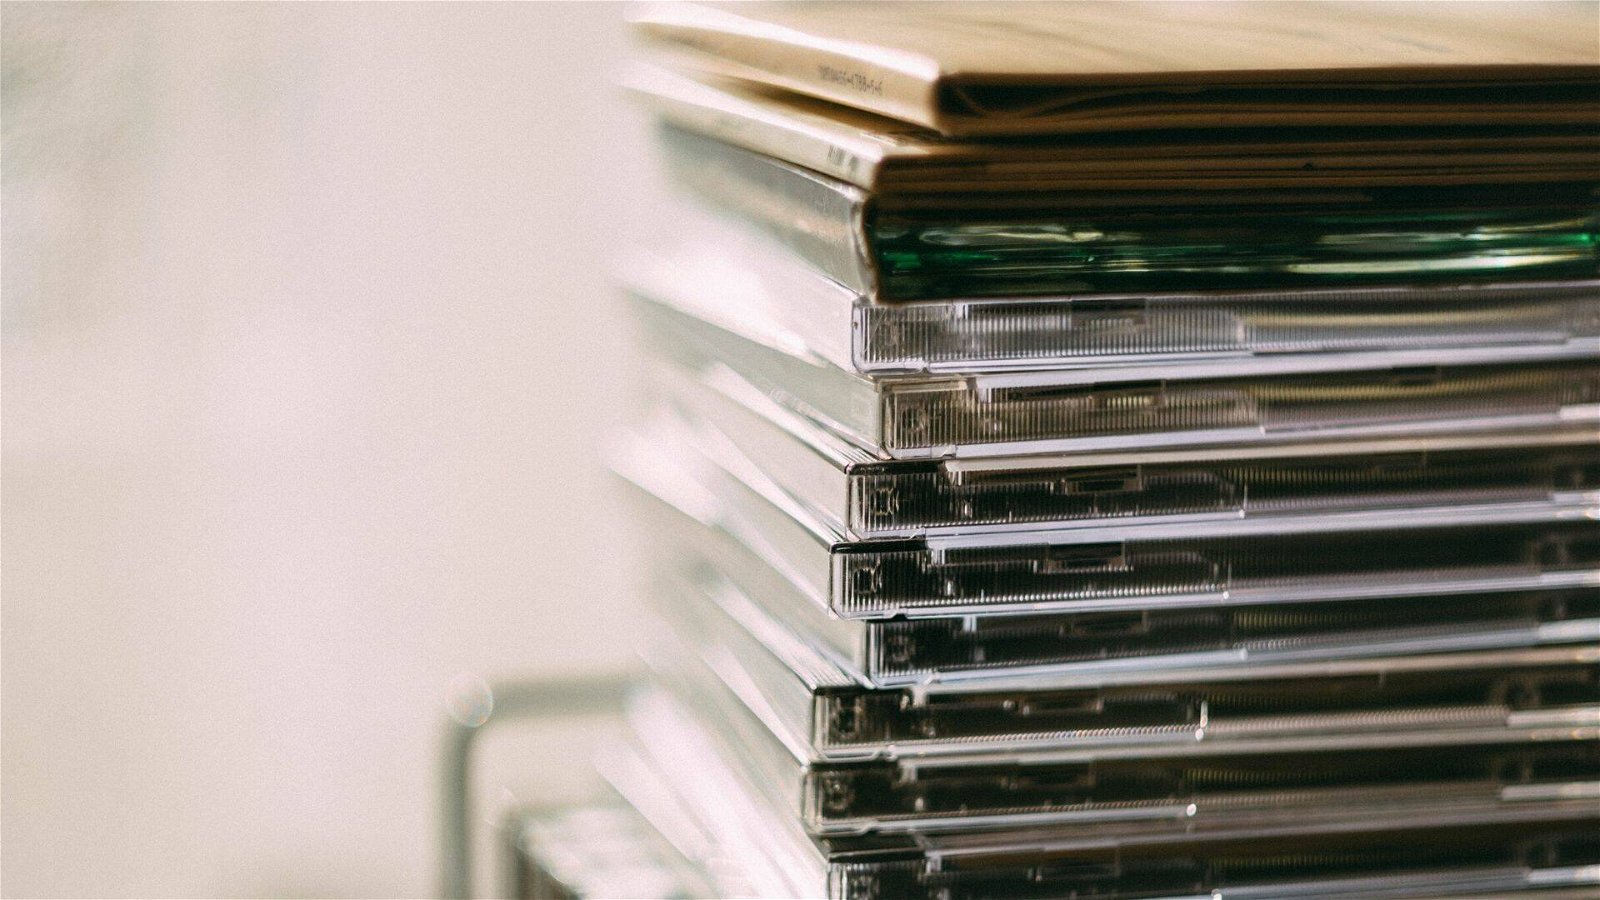 Immagine di Partono le offerte Amazon dedicate alla musica: sconti su CD e vinili!